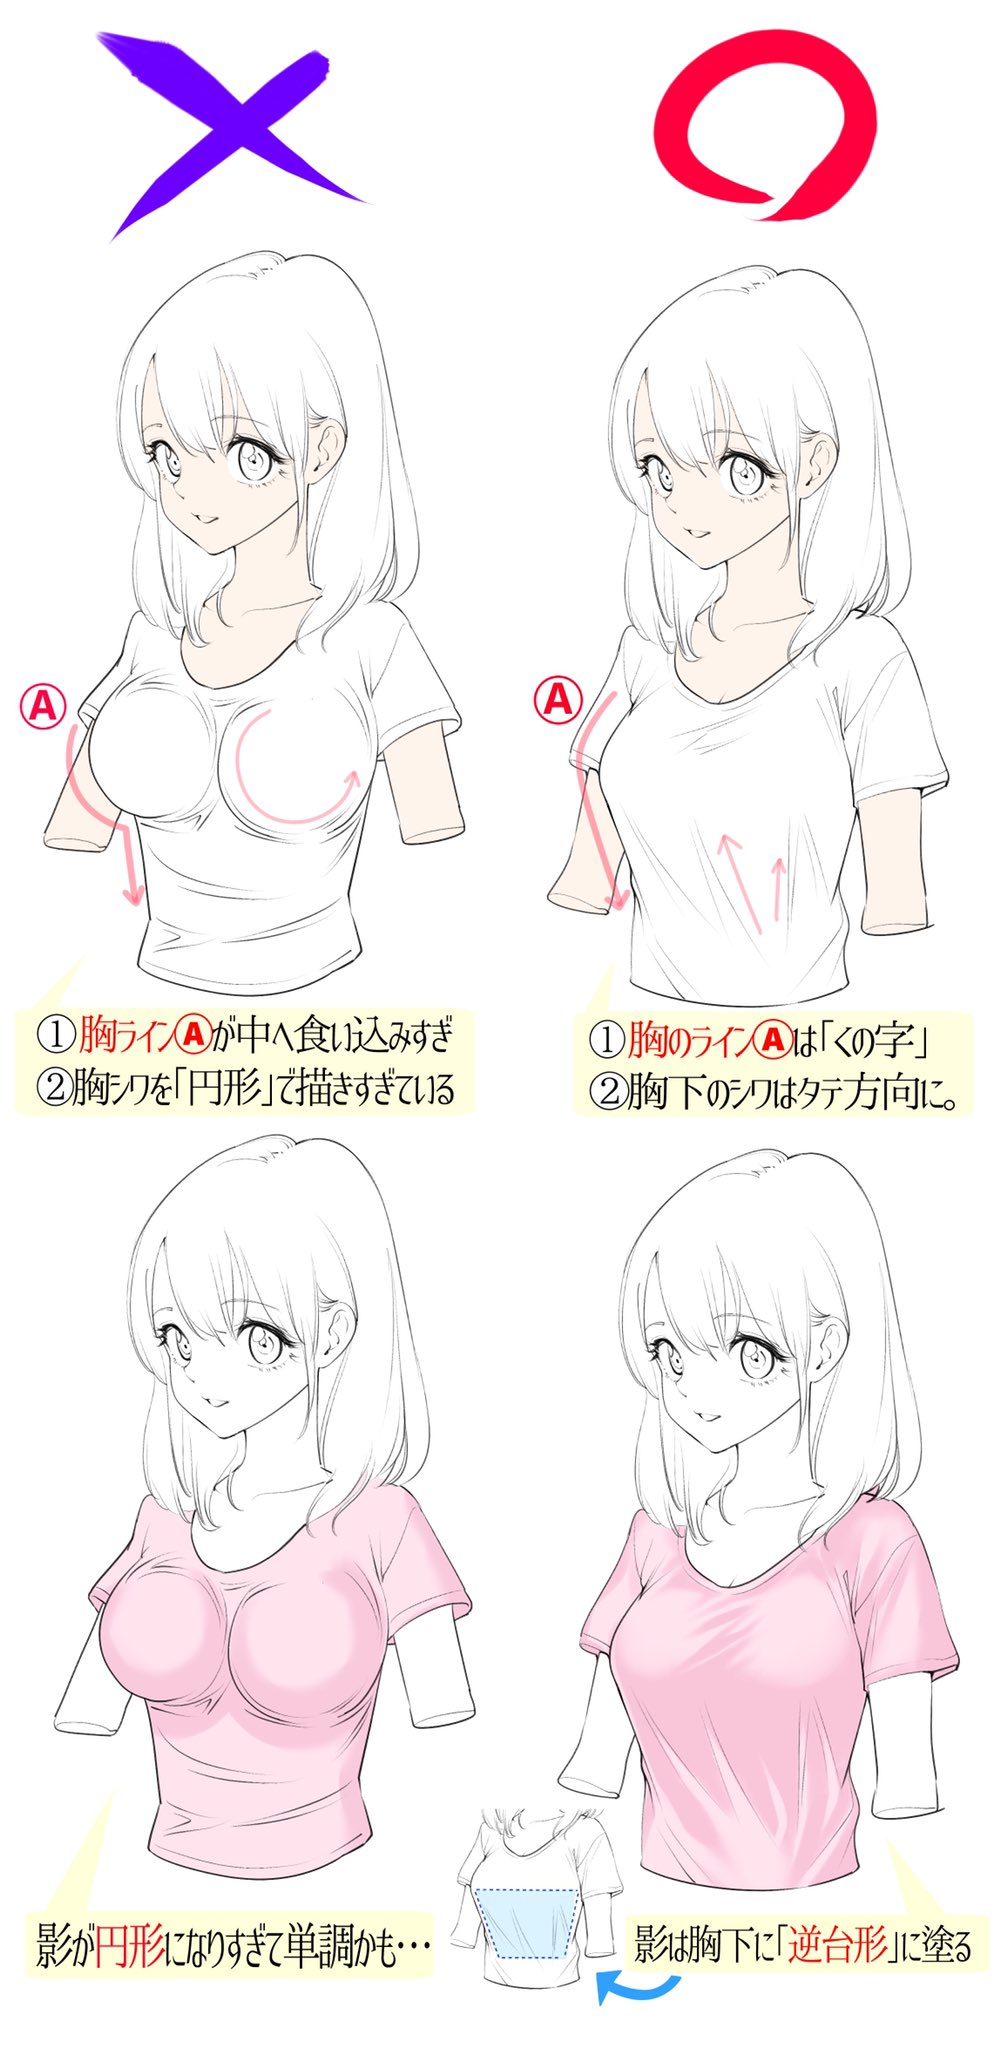 吉村拓也 イラスト講座 女の子のtシャツの描き方 ヘタに見えやすい理由 と 上手に見えやすい理由 T Co Oj2tpmjtf9 Twitter